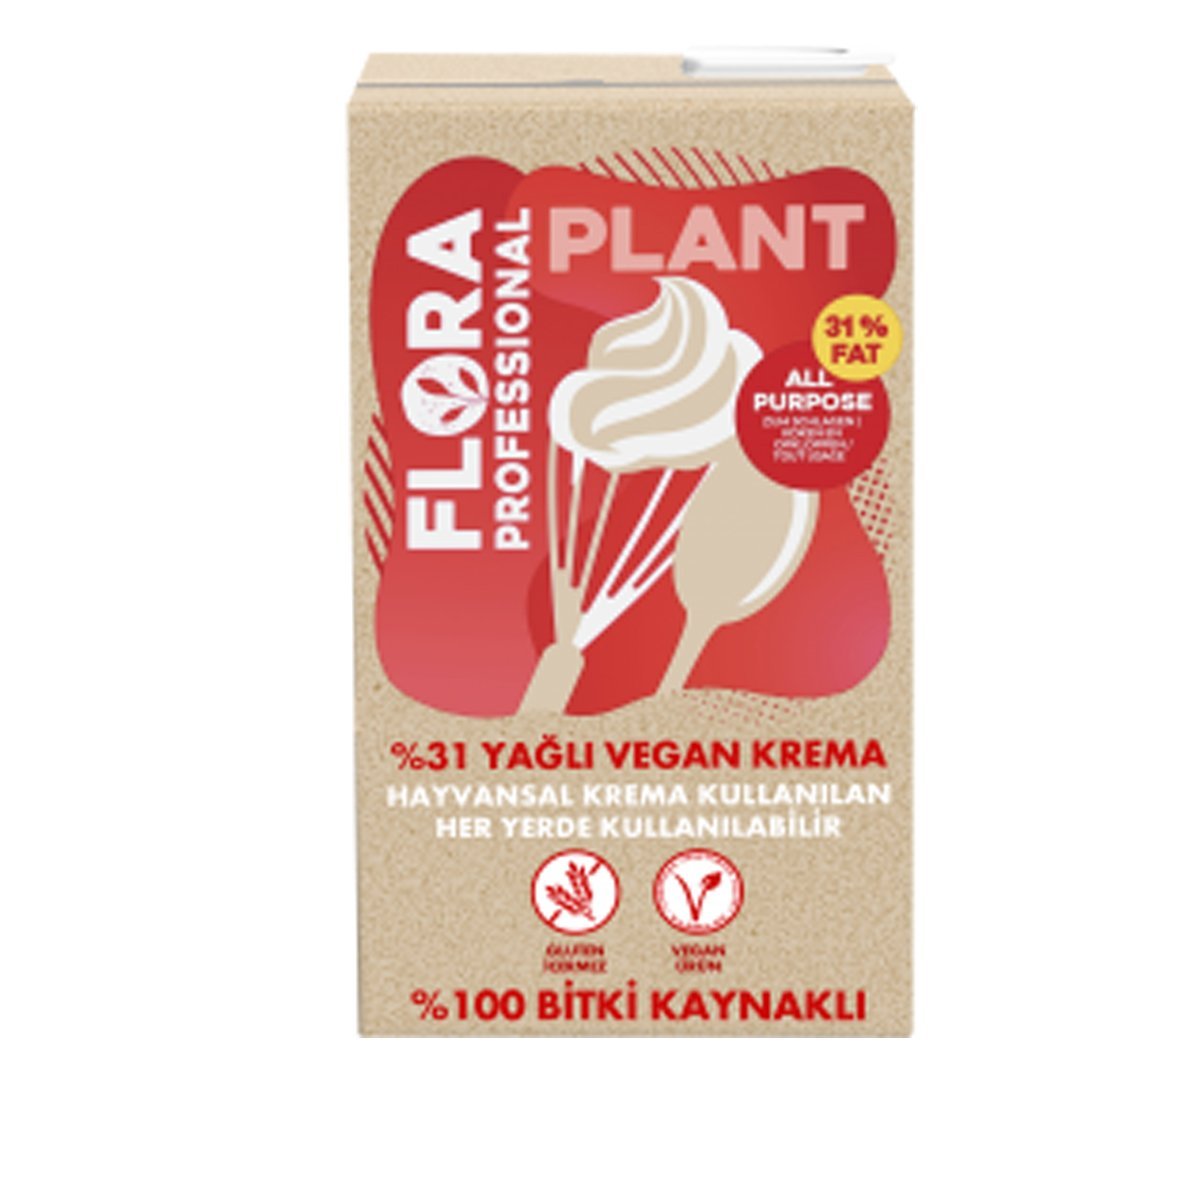 Flora %31 Yağlı Vegan Krema 1 Lt